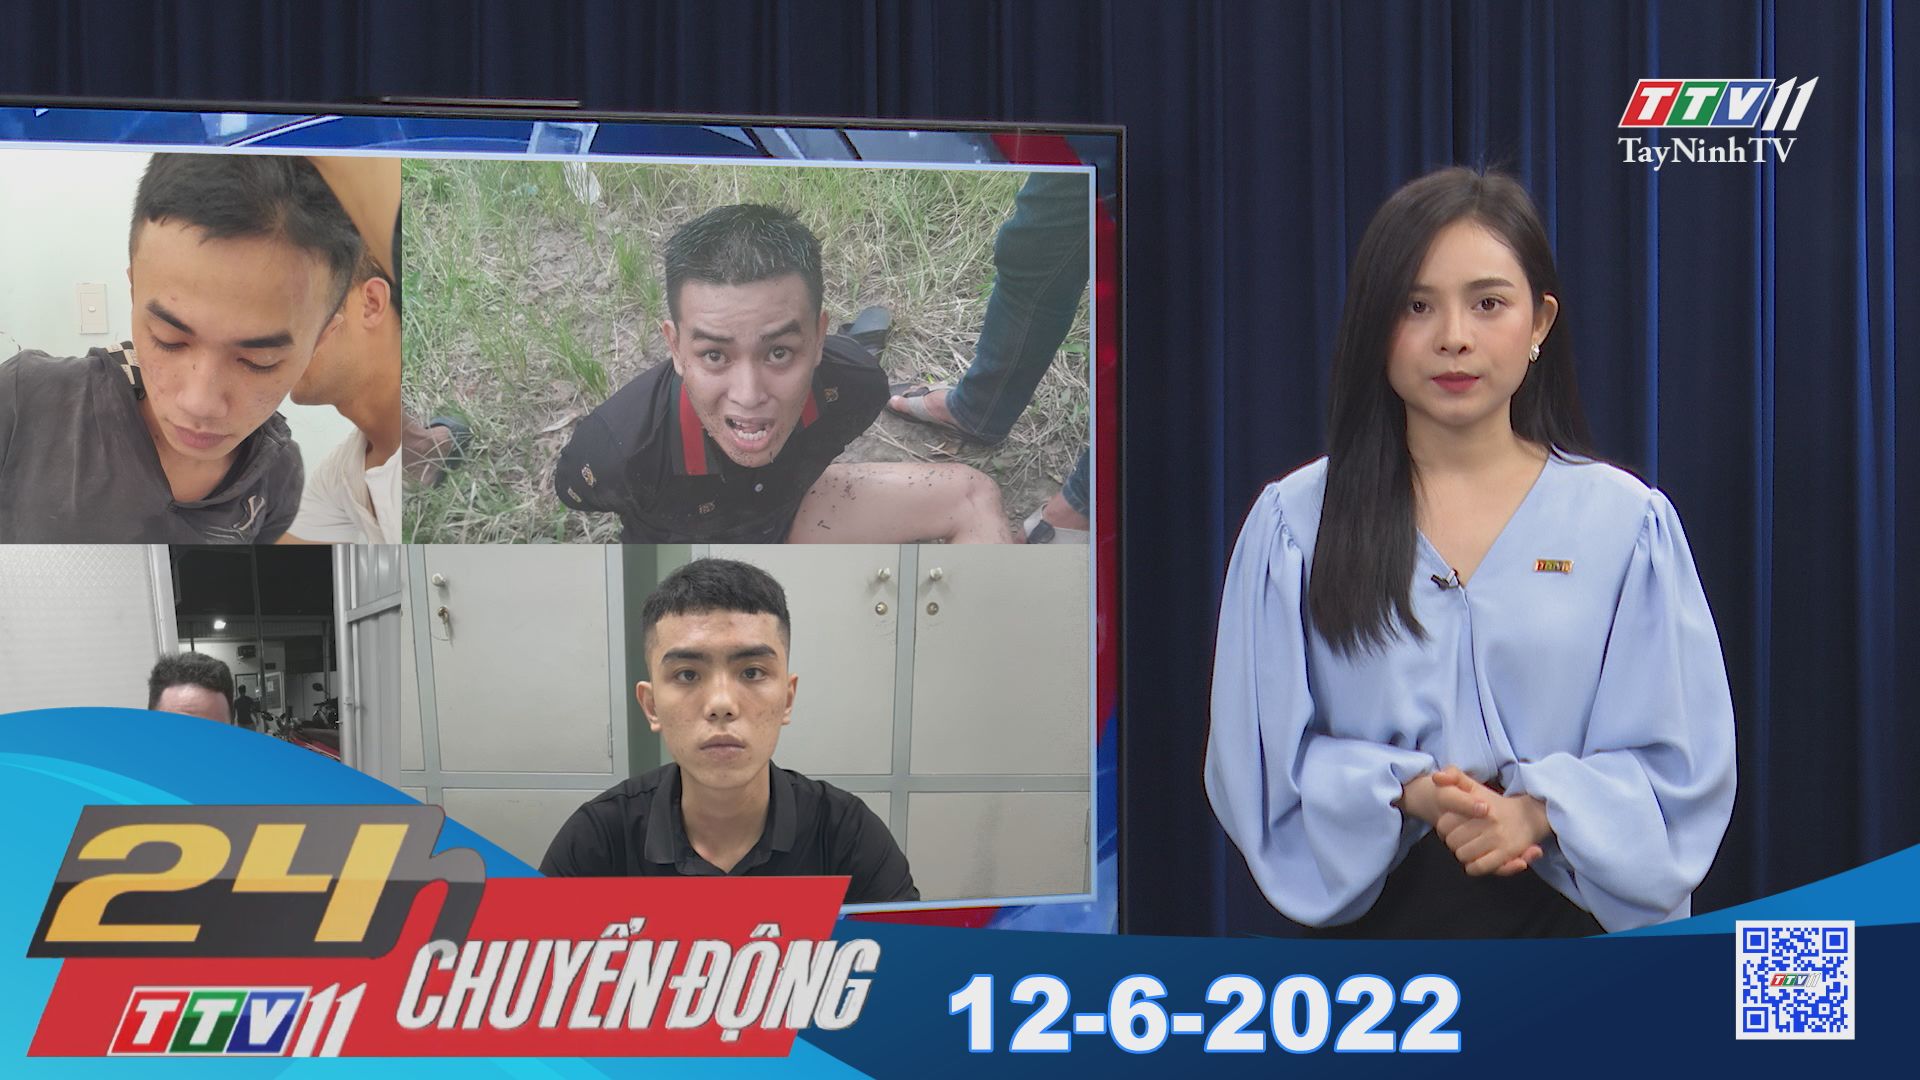 24h Chuyển động 12-6-2022 | Tin tức hôm nay | TayNinhTV